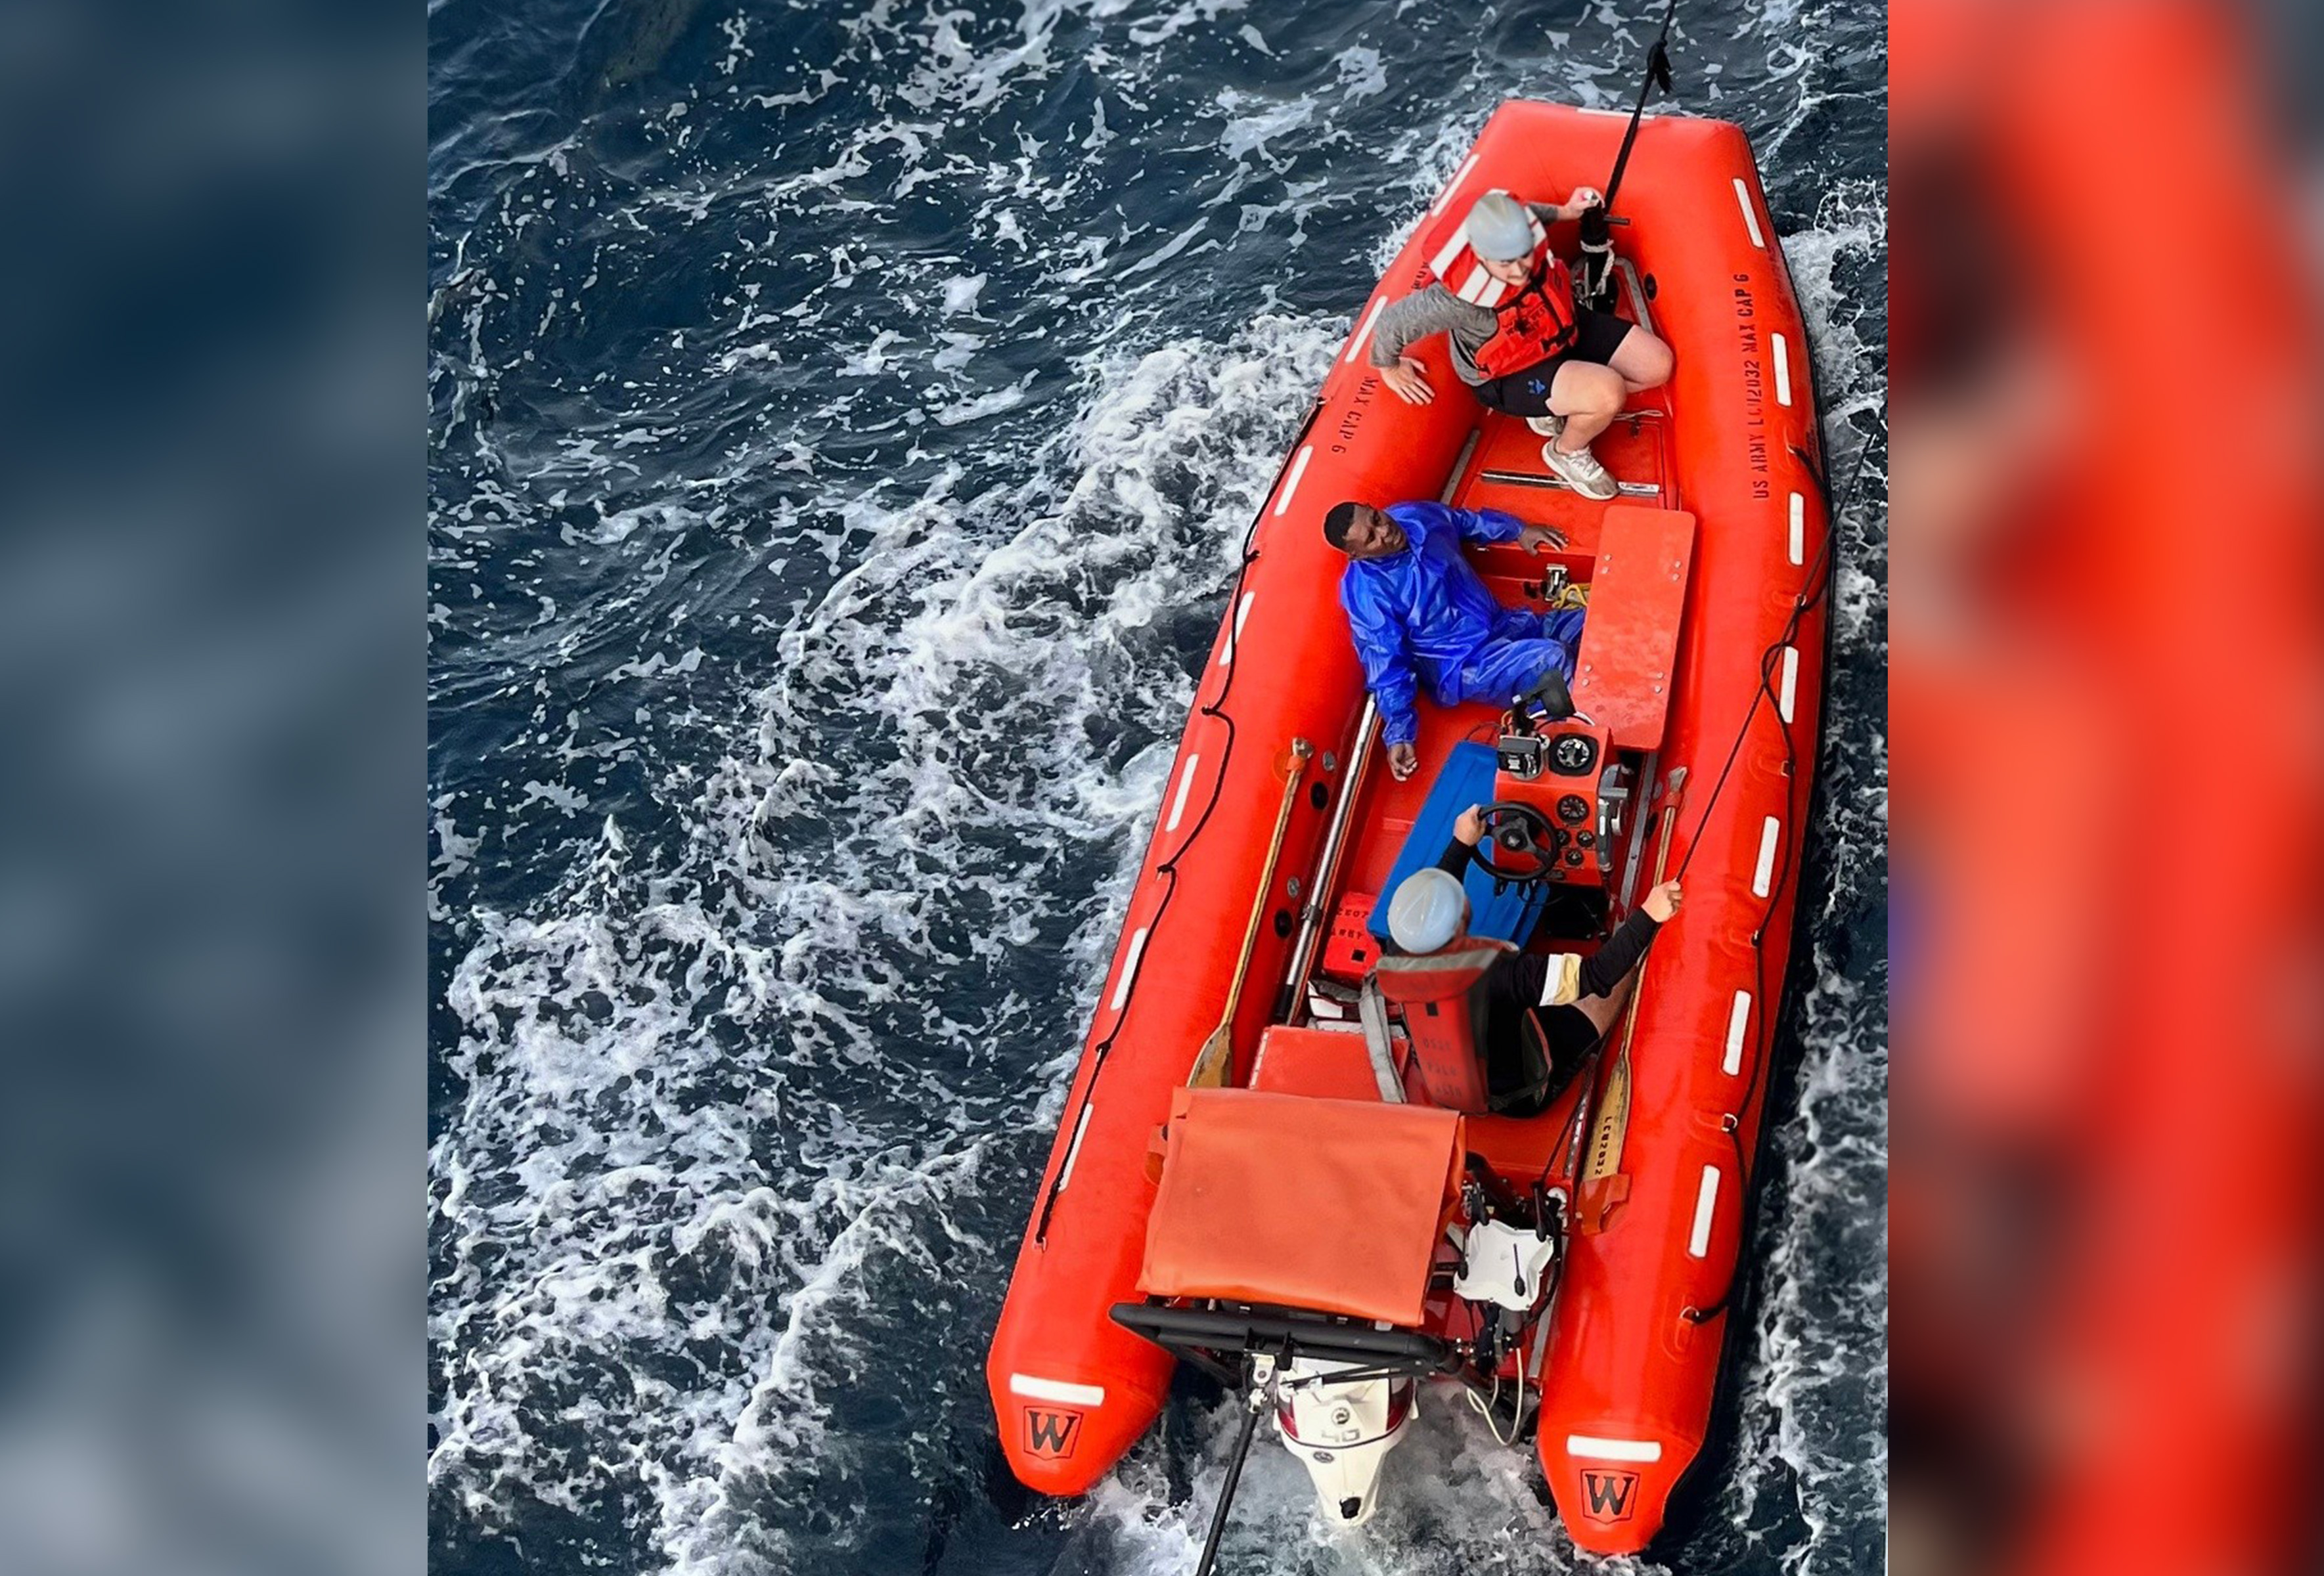 Un pêcheur retrouvé accroché au couvercle d’une glacière en mer a été sauvé